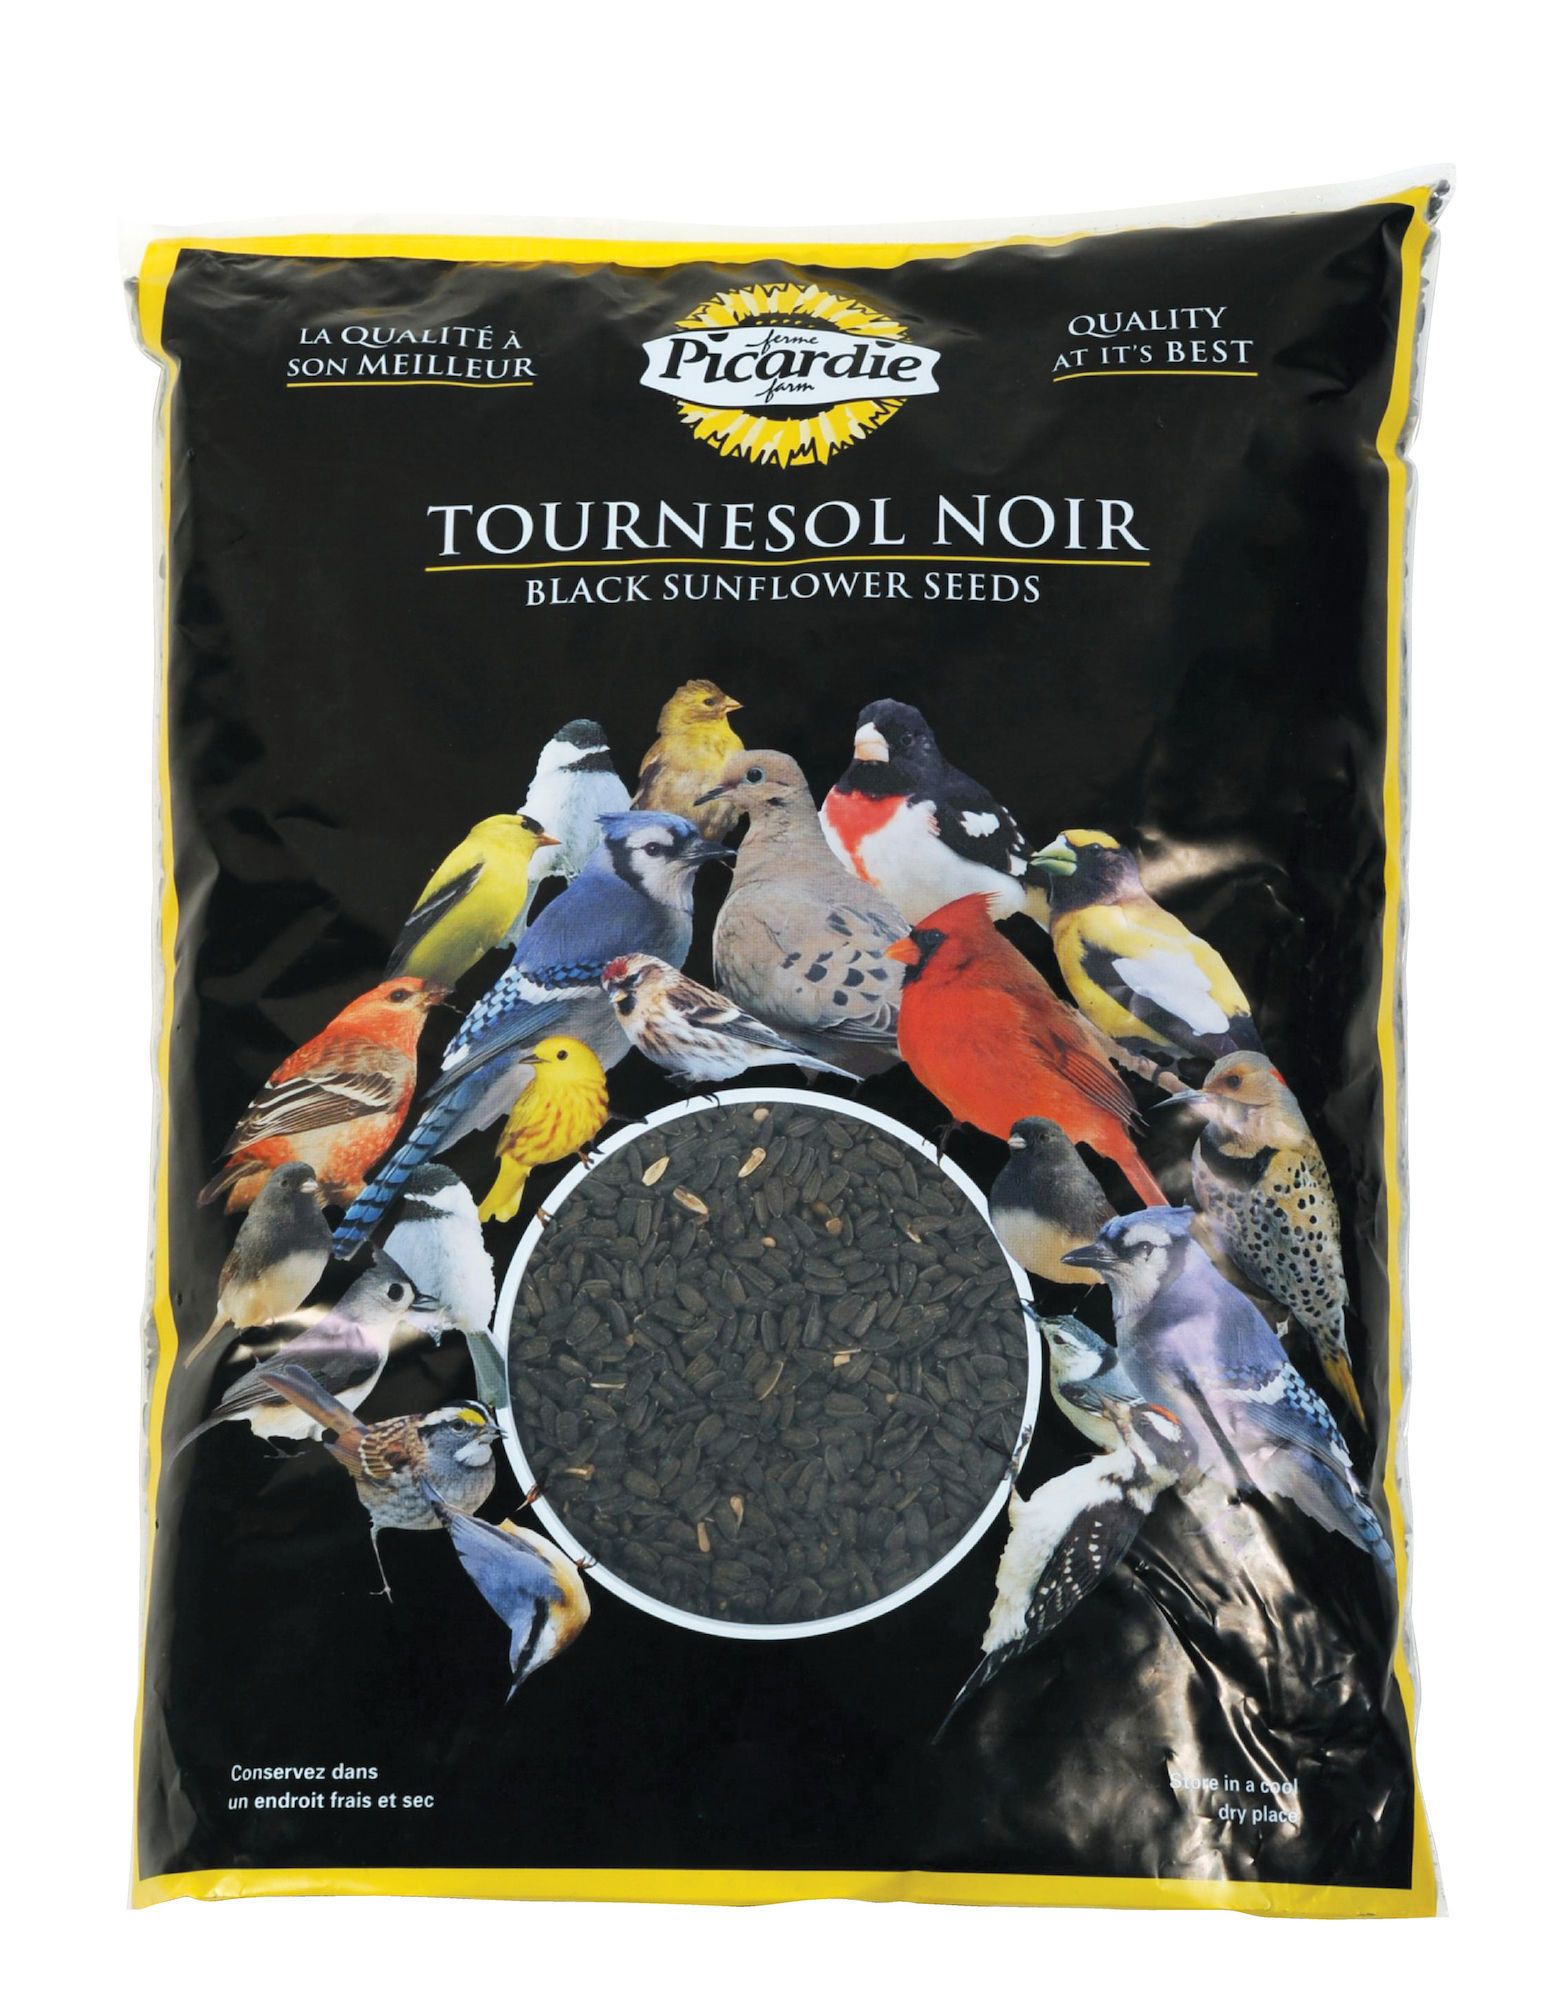 Tournesol noir pour oiseaux sauvages - Armstrong